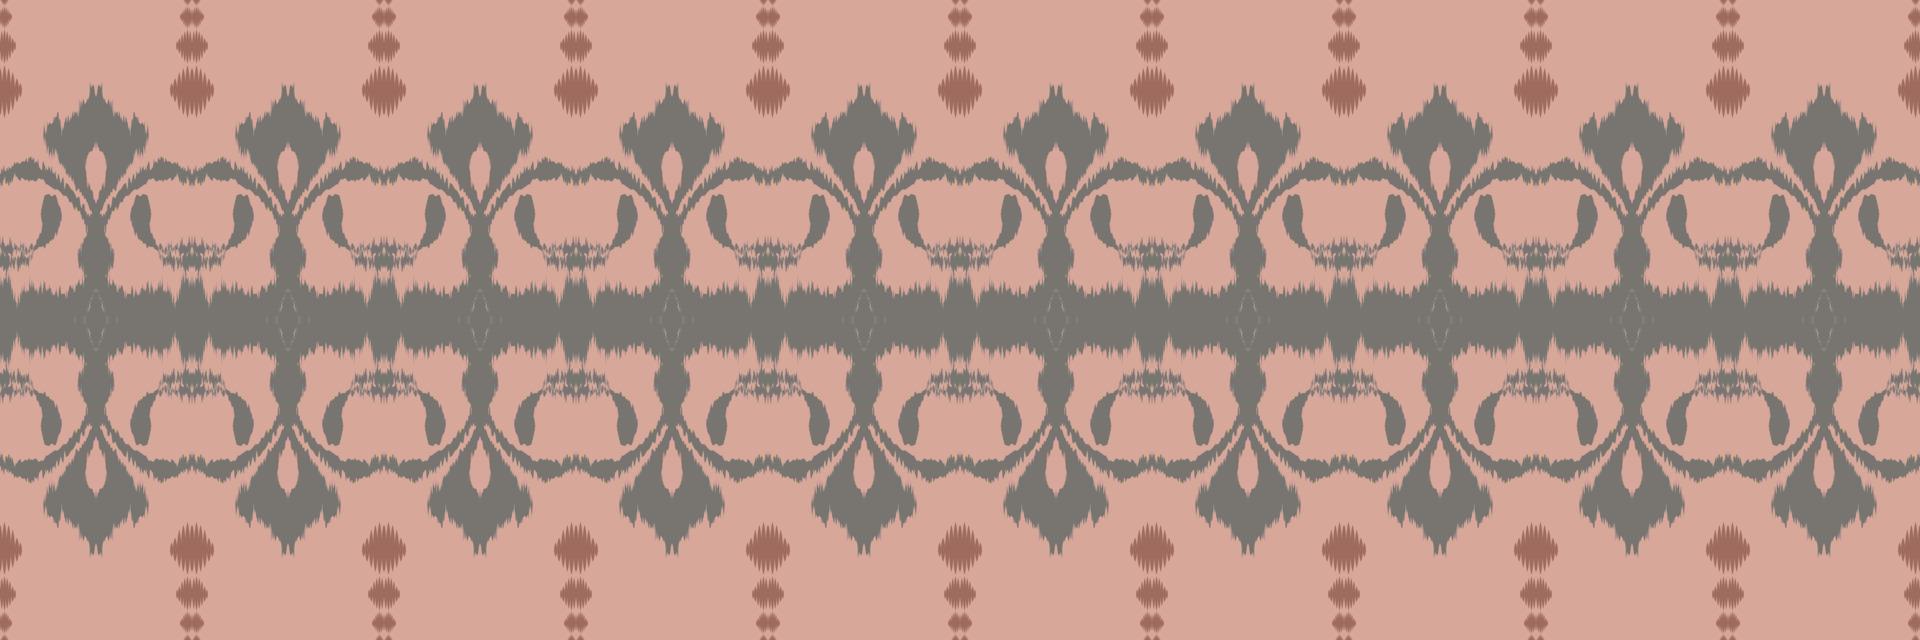 batik textil ikat flores de patrones sin fisuras diseño vectorial digital para imprimir saree kurti borde de tela símbolos de pincel de borde muestras de algodón vector